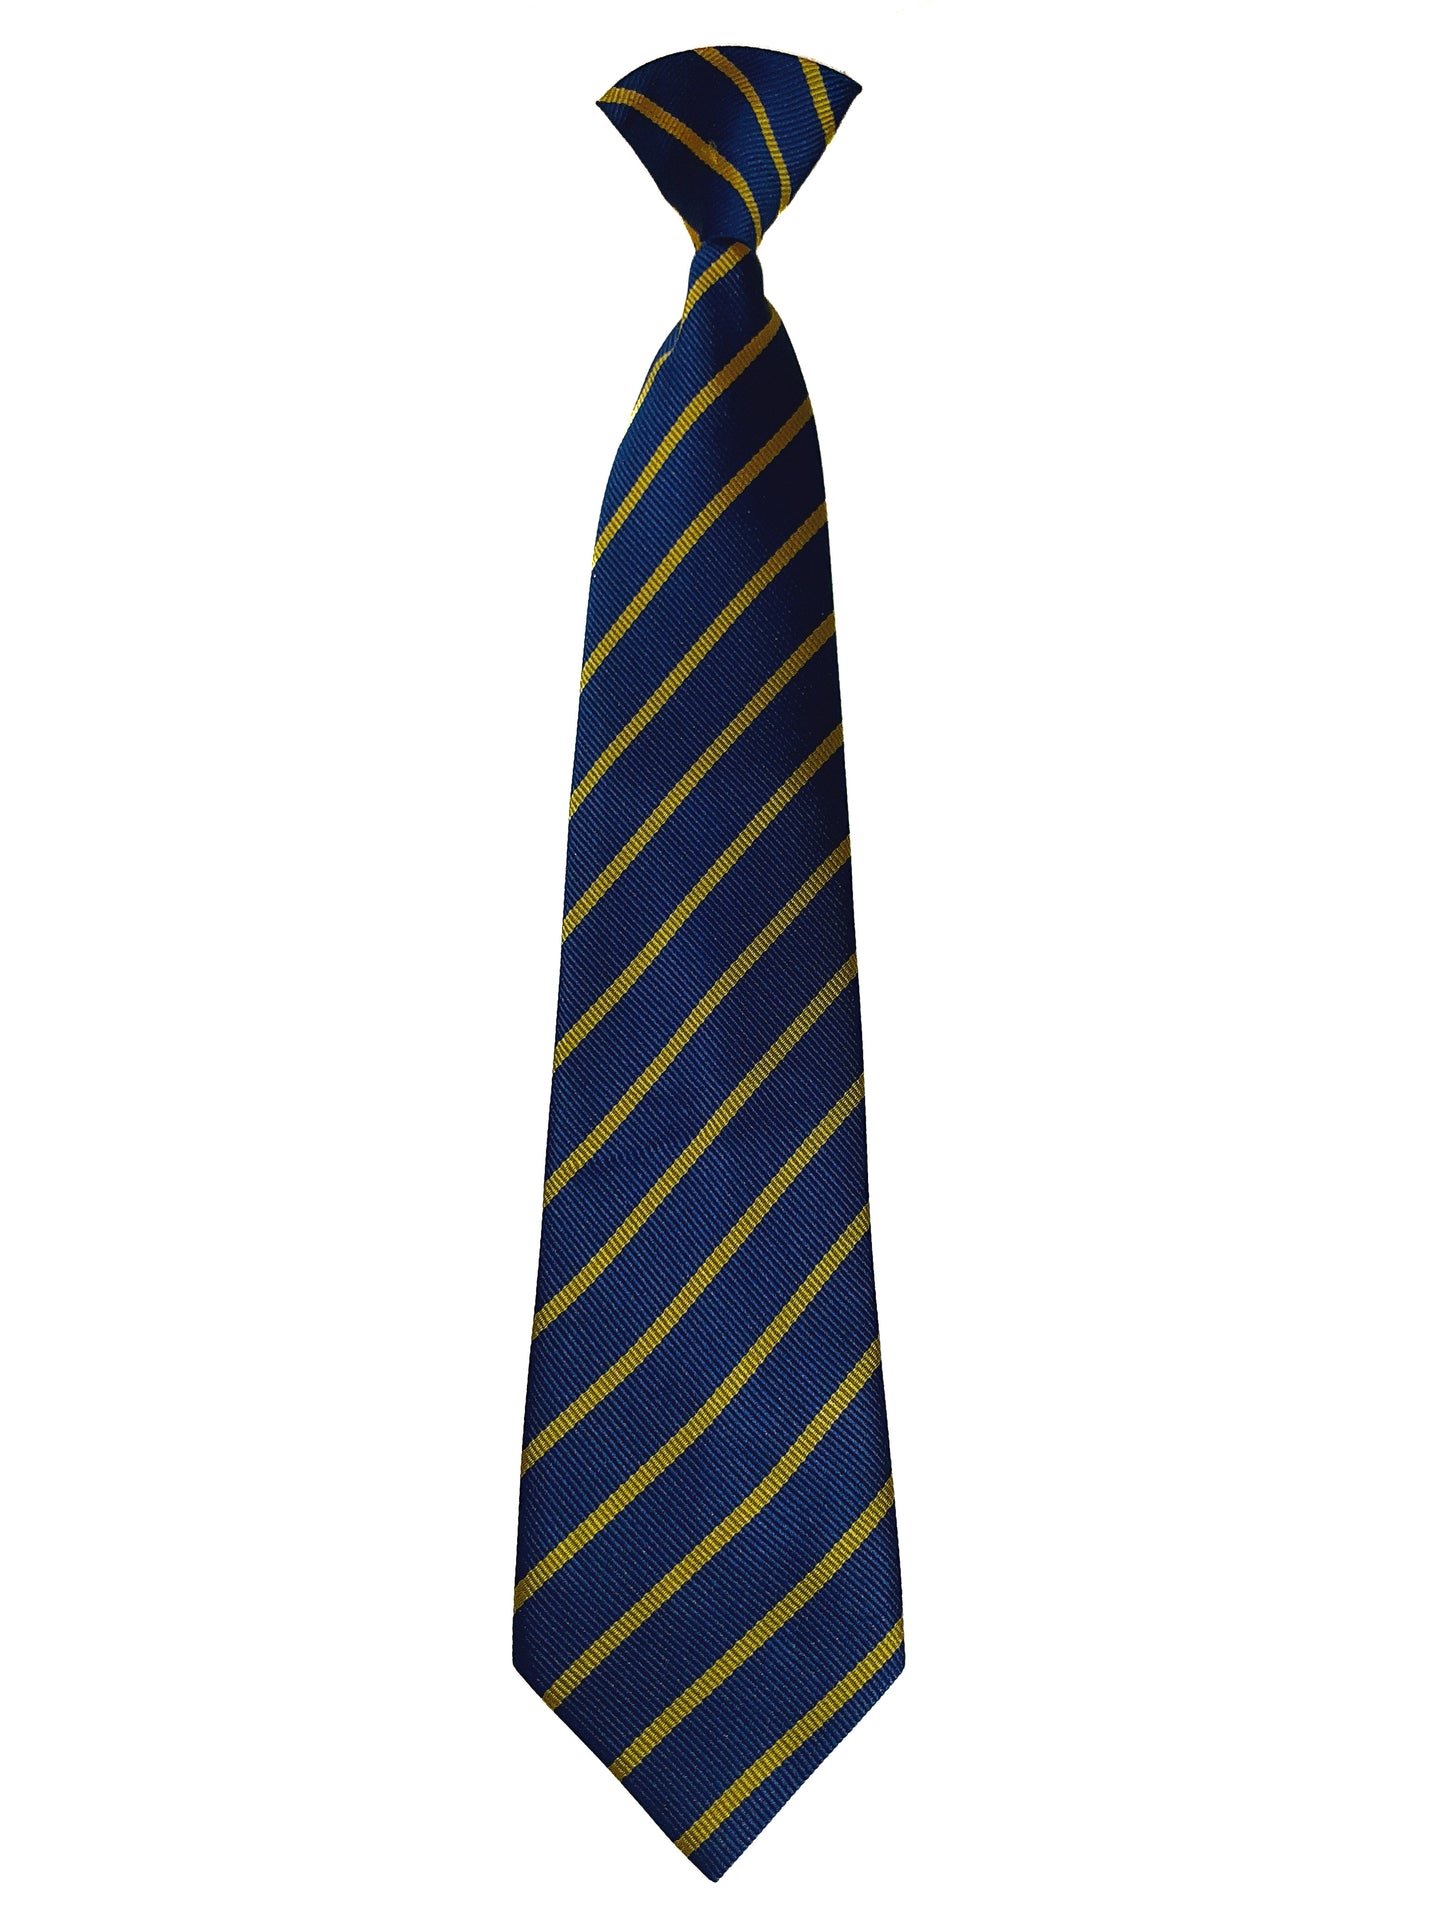 St. Paul's N.S. - School Tie